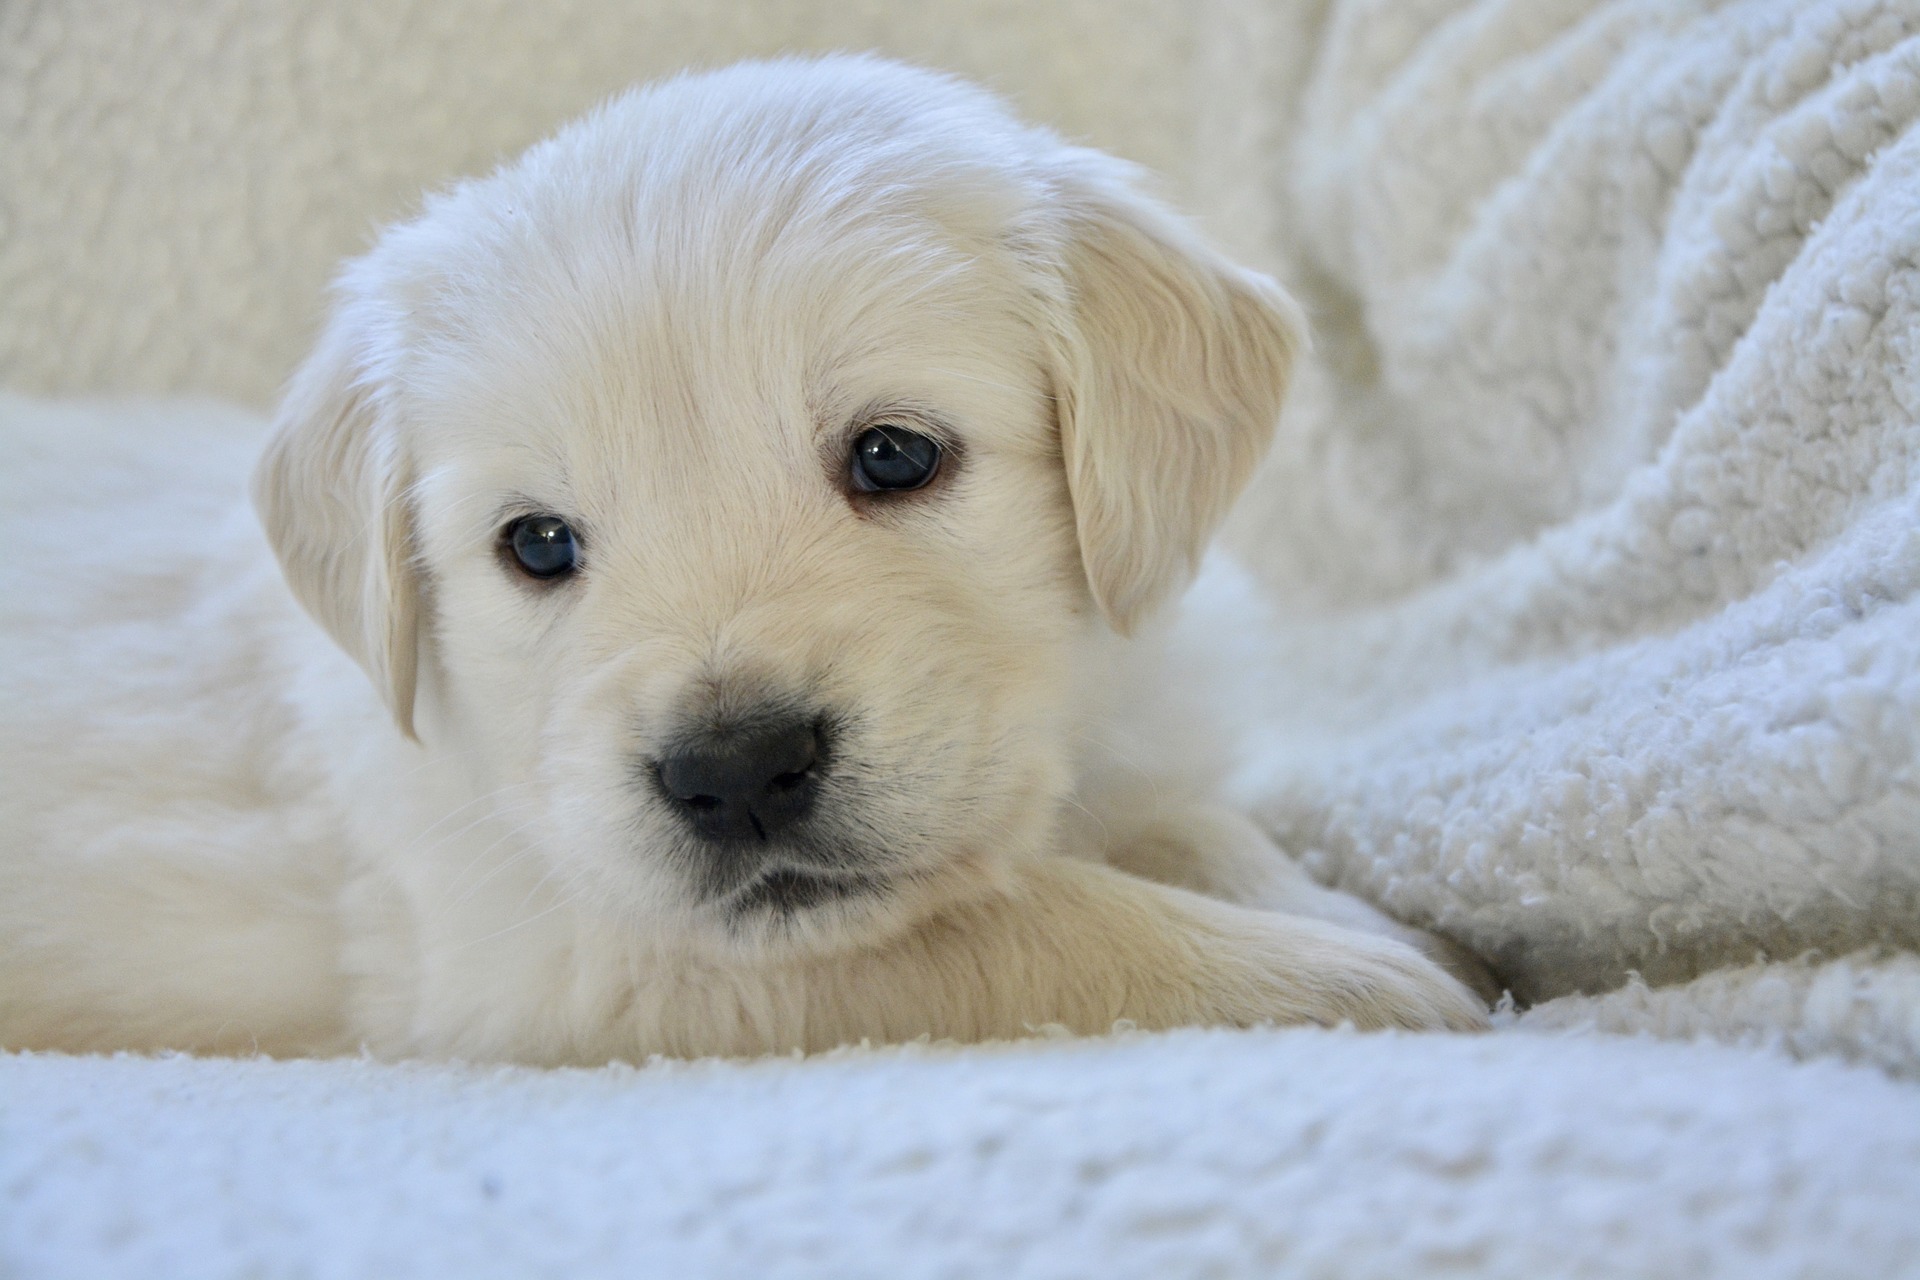 Bộ ảnh "Hình ảnh chó Golden Retriever" hiền lành, dễ thương 18